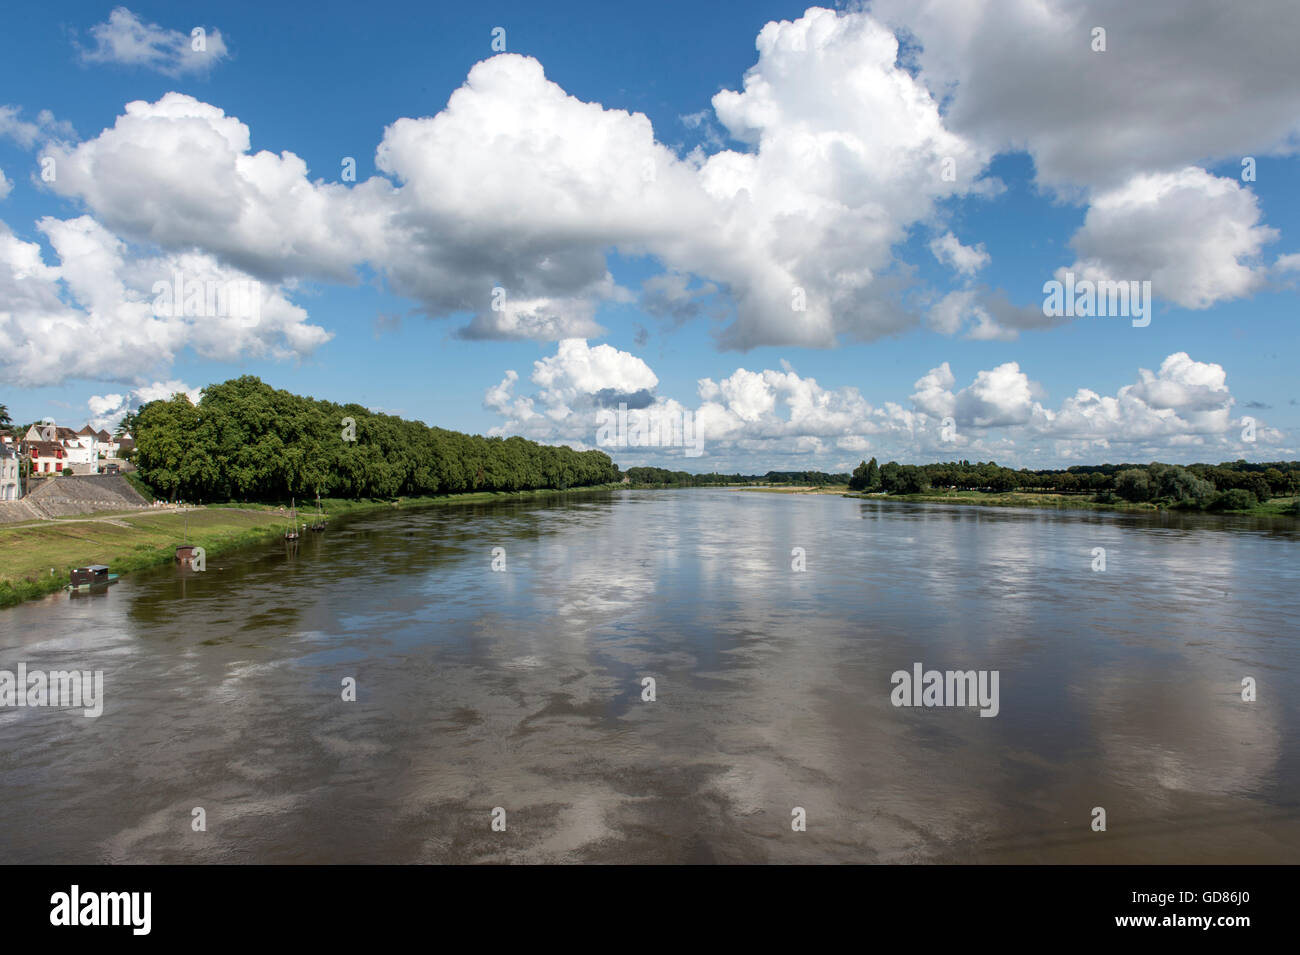 Europe, France, Loiret region, Loire river at Chateauneuf sur Loire Stock Photo